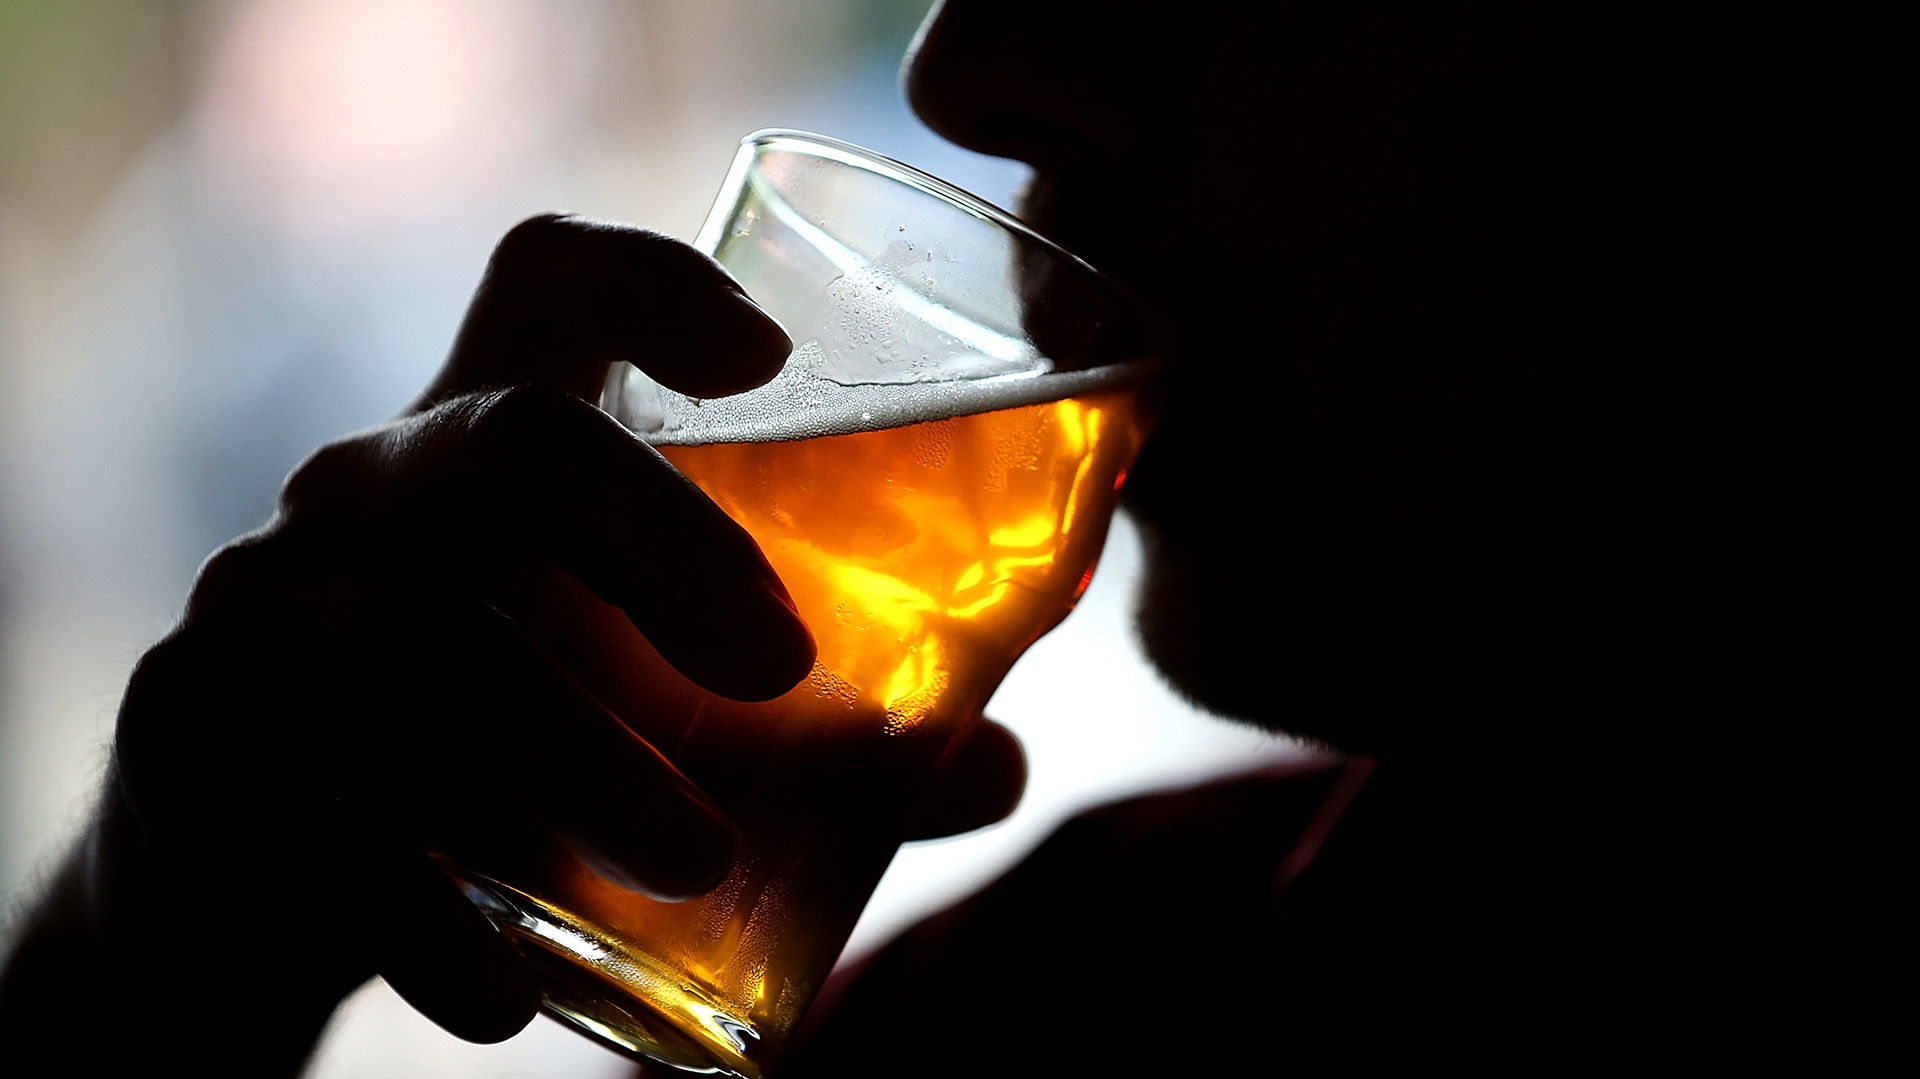 Los científicos descubrieron que si los bebedores “intensos” tomaran menos diariamente, y pasaran a la categoría de consumo moderado, habría una reducción del 24% en muertes por cánceres atribuibles al alcohol en el país (Getty Images)